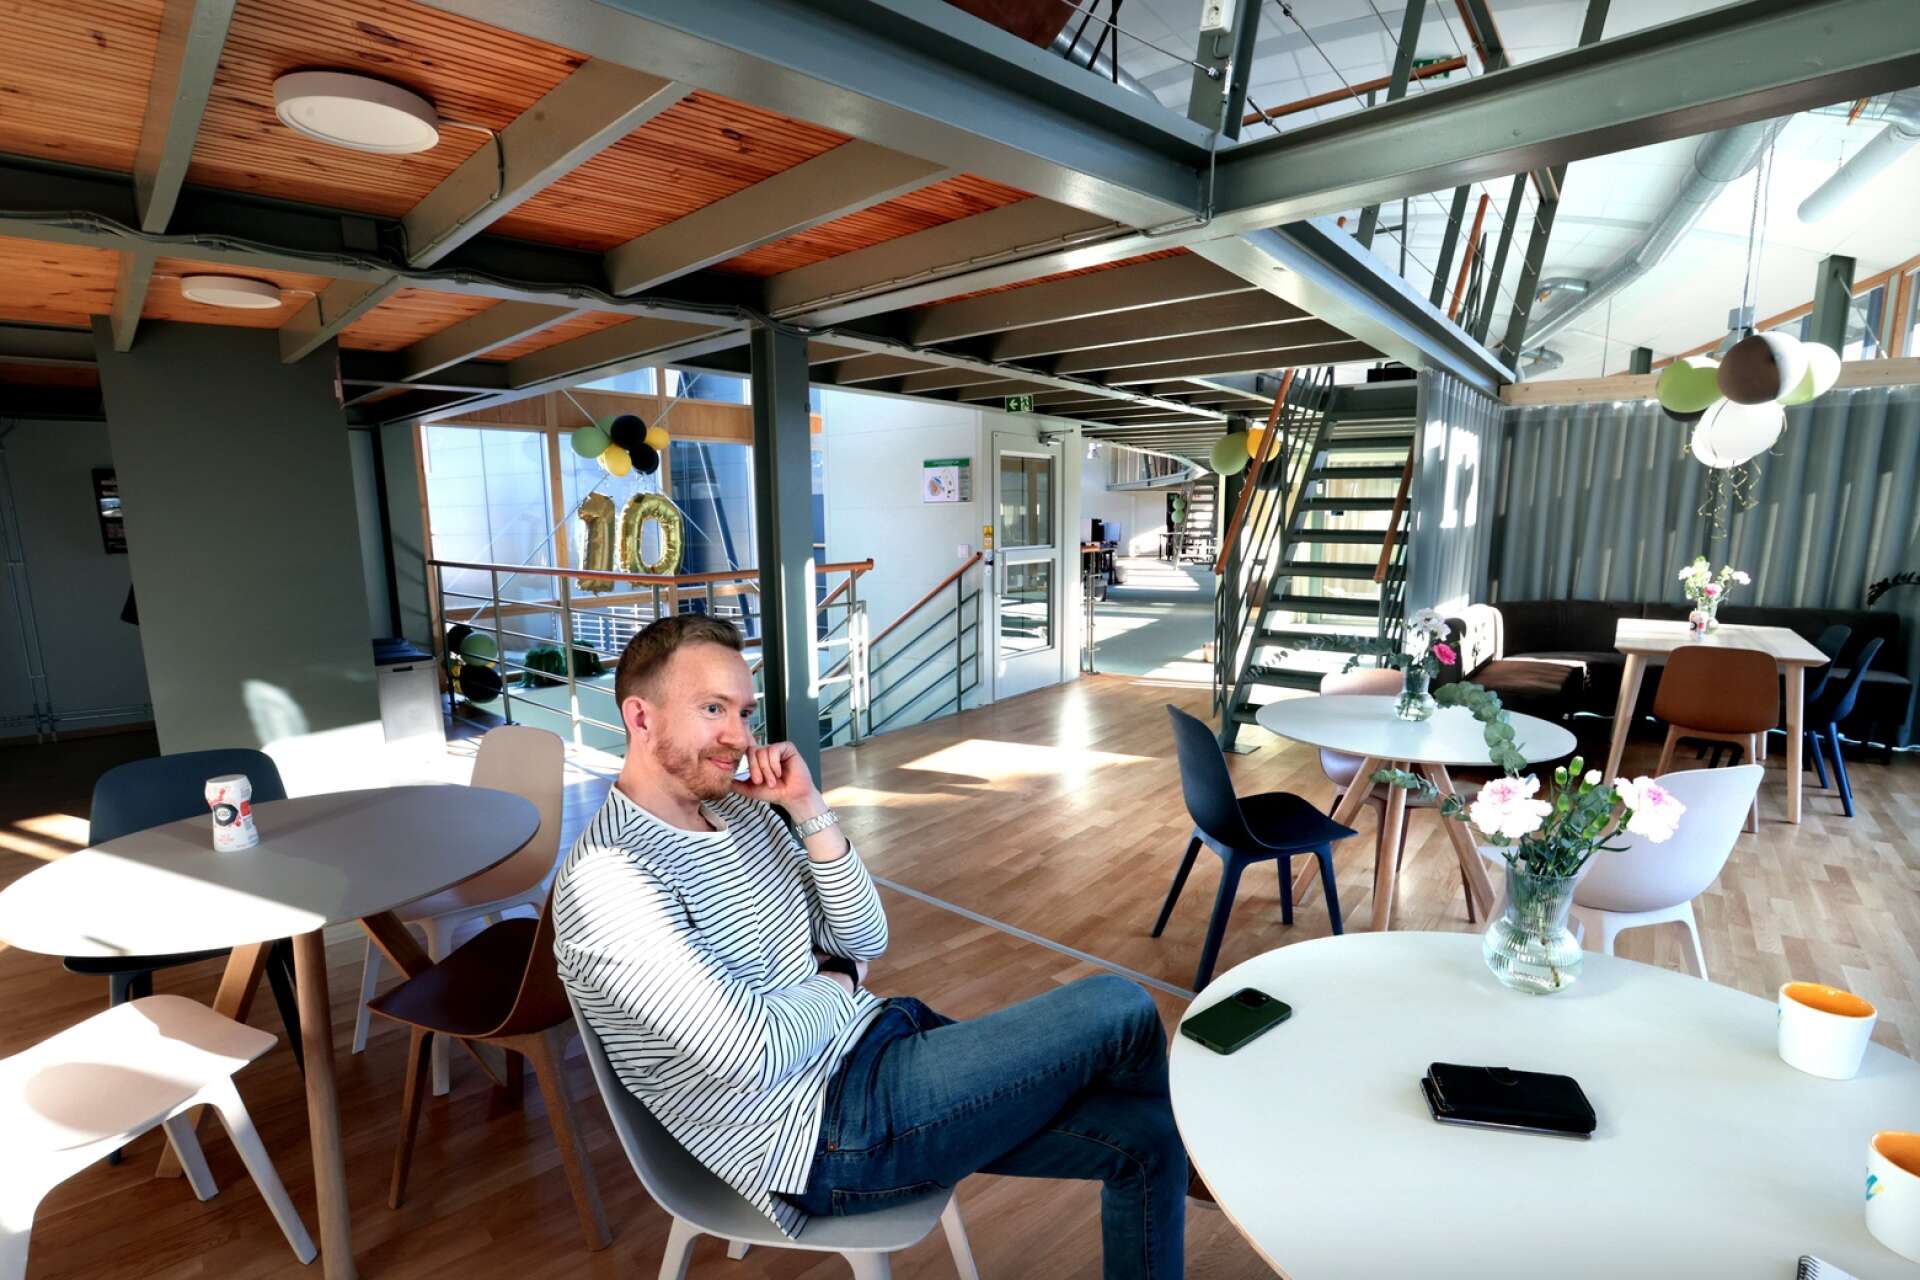 Vd:n Jakob Twedmark är nöjd med designen av det nya kontoret. ”Det blev bättre än jag trodde” säger han.